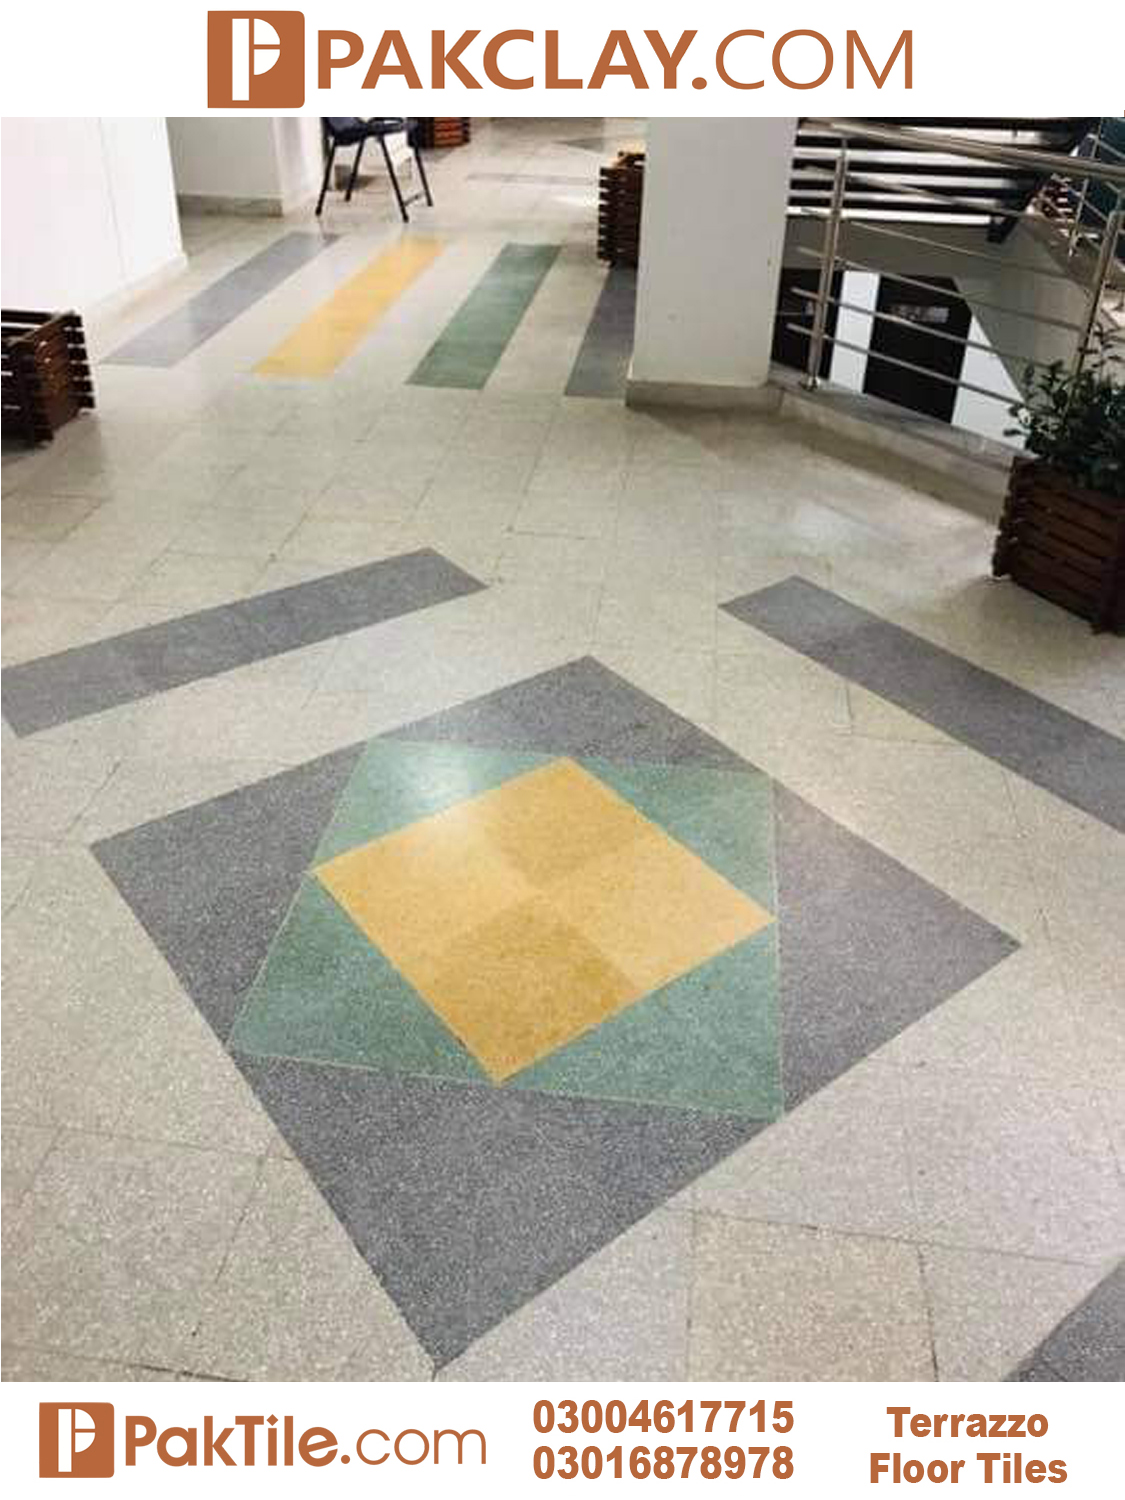 4 Pak Clay Terrazzo Flooring Tiles Lahore